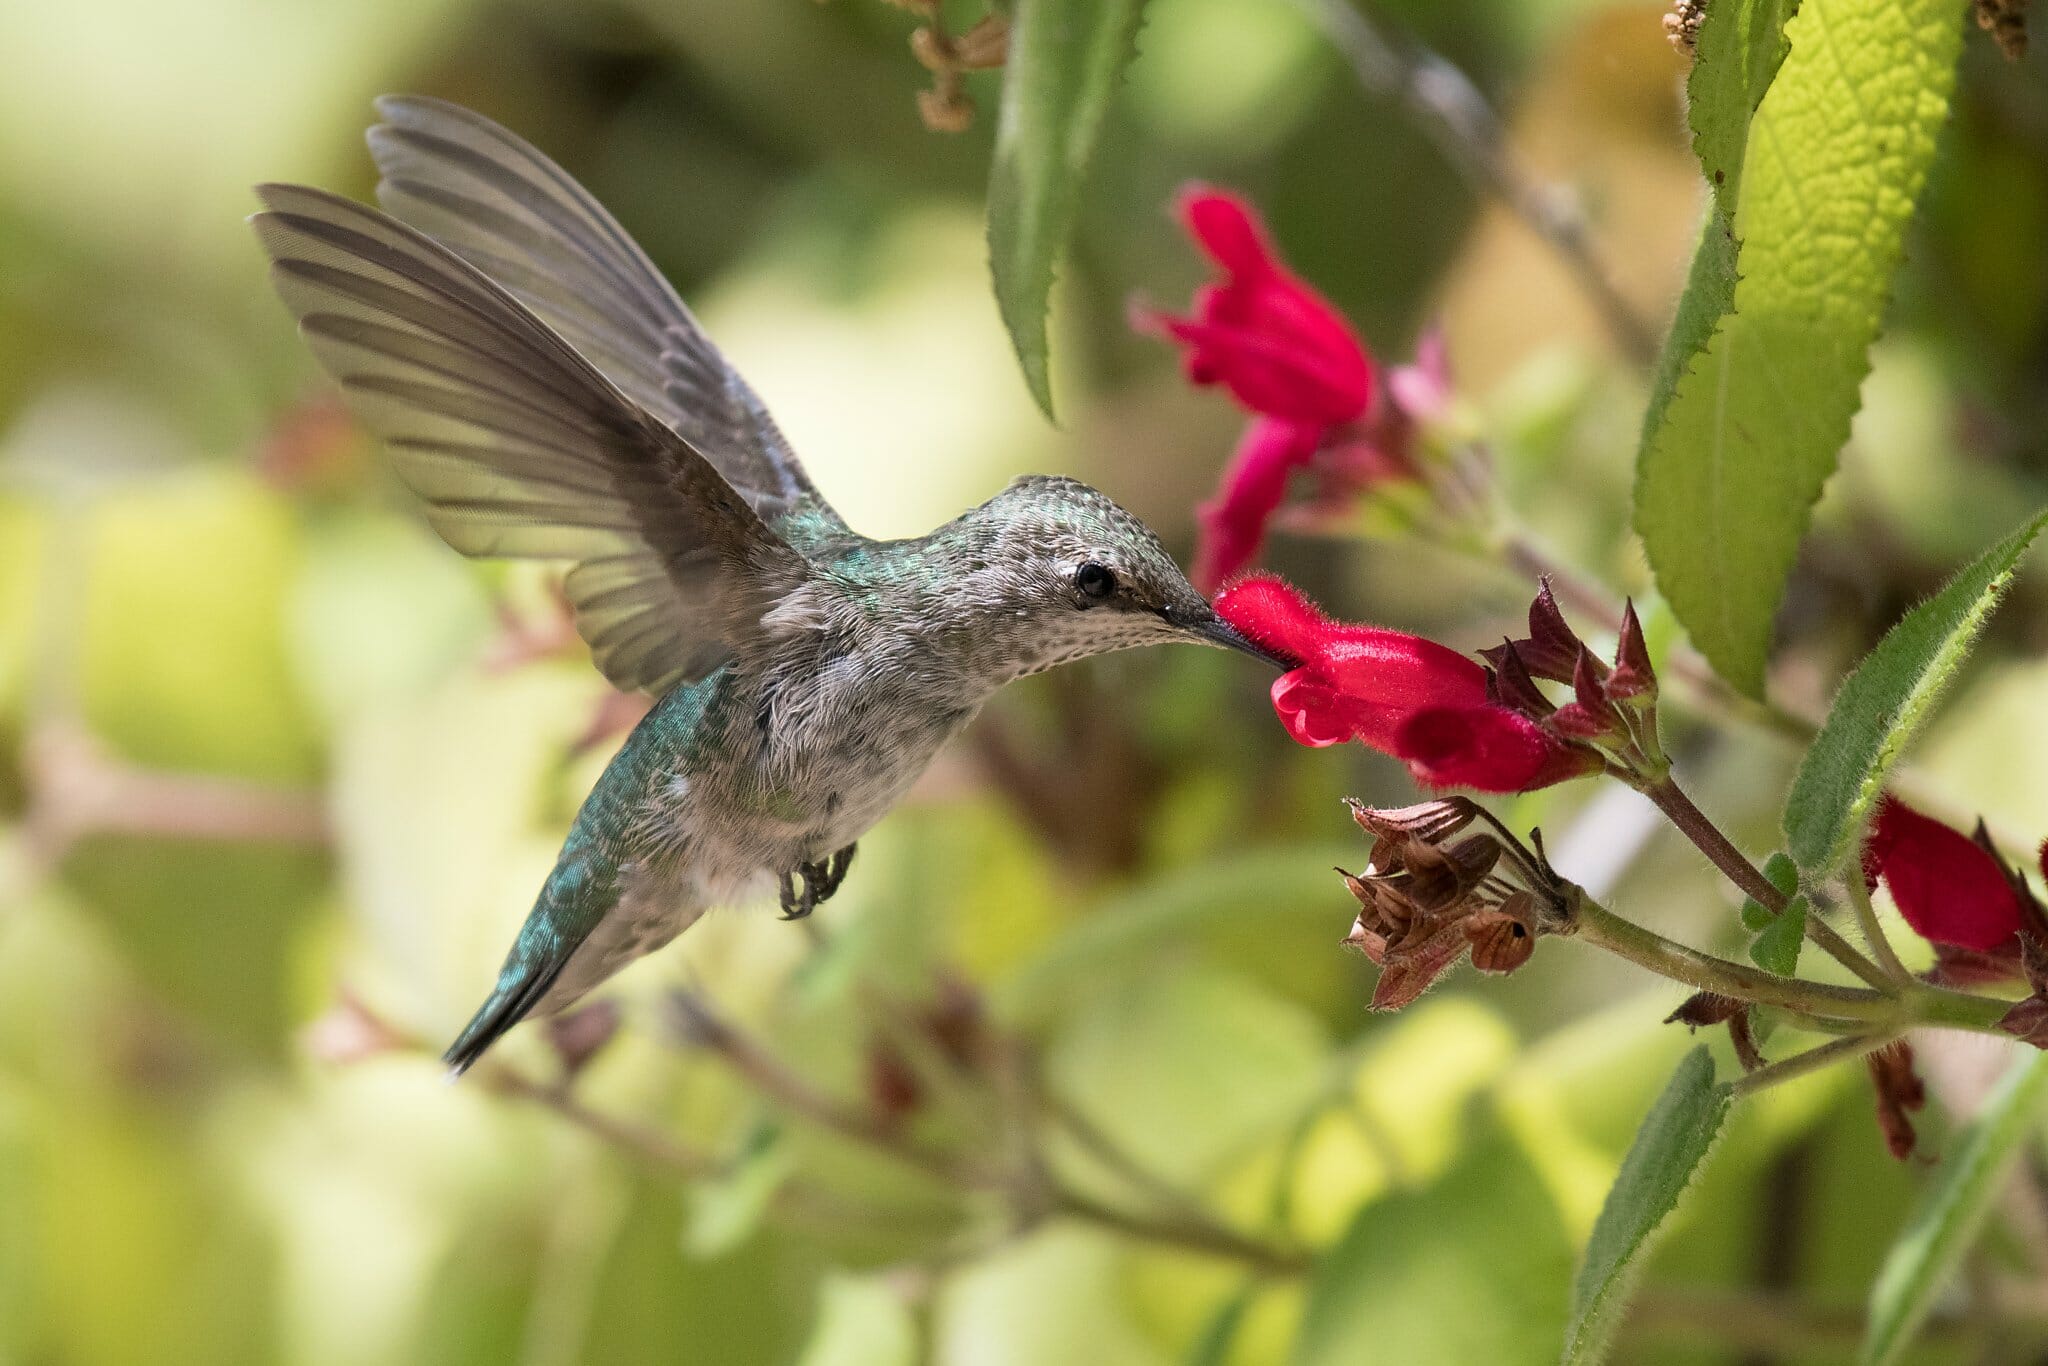  rostliny, které přitahují kolibříky